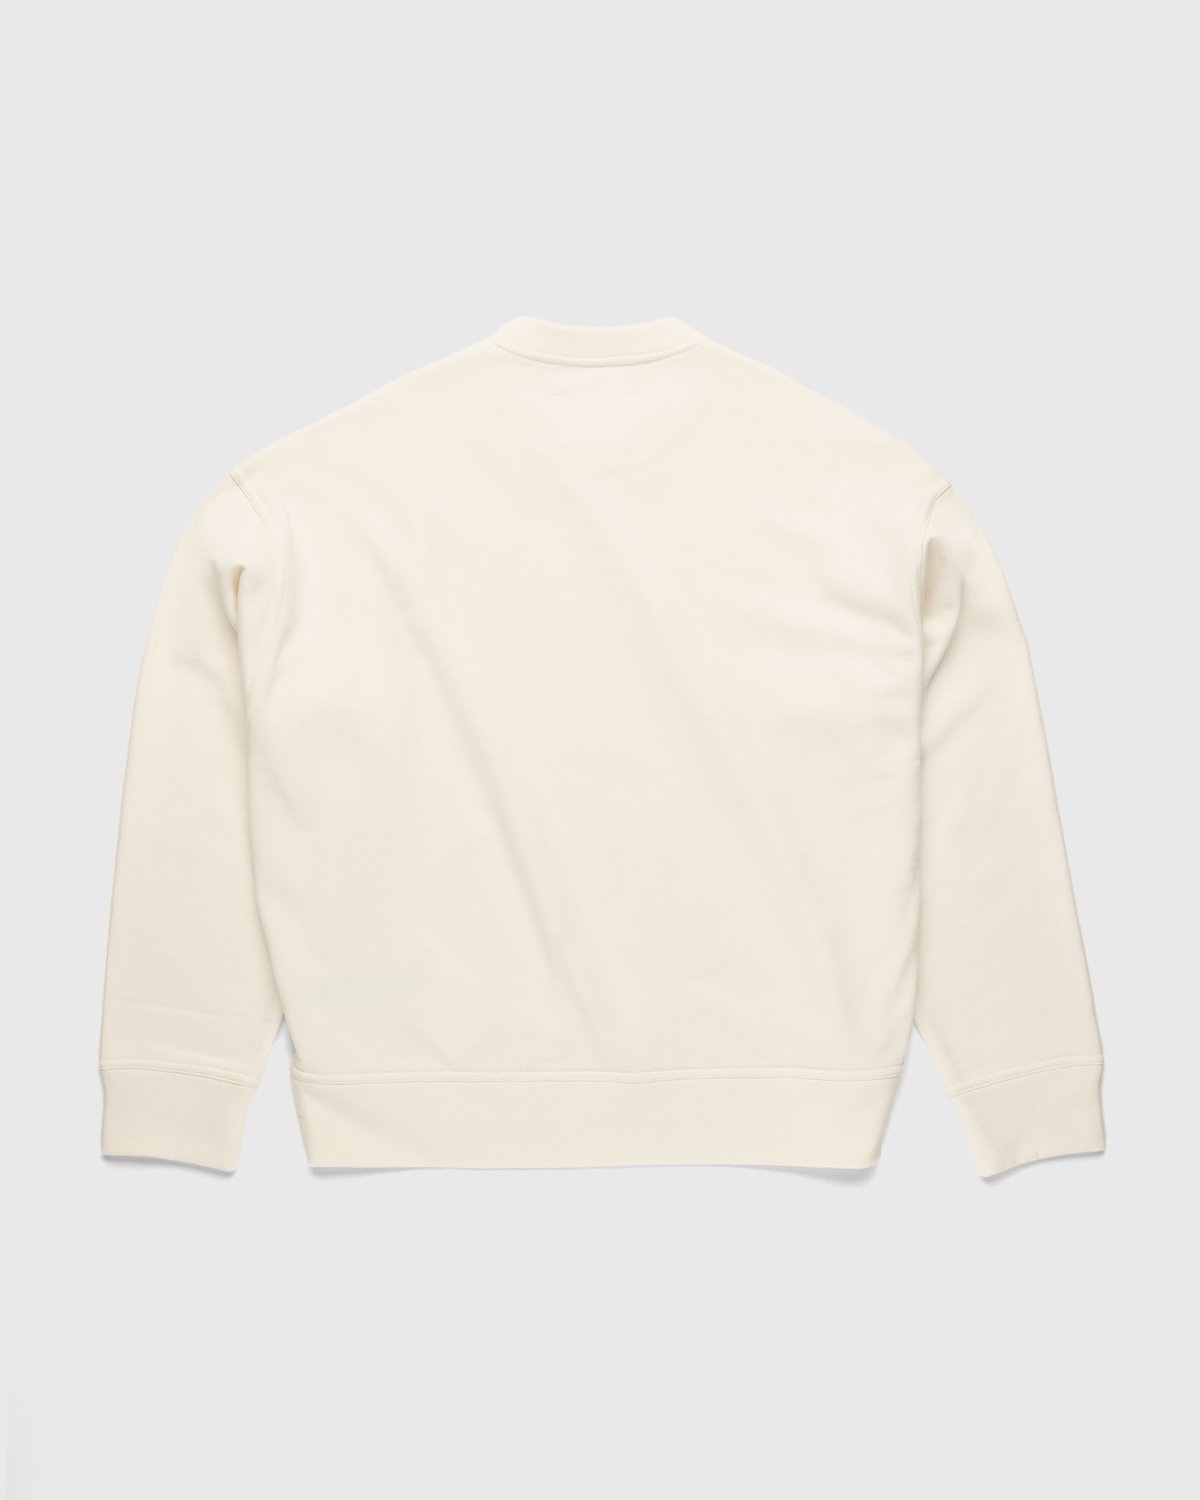 Jil Sander - Logo Sweater Natural - Clothing - Beige - Image 2